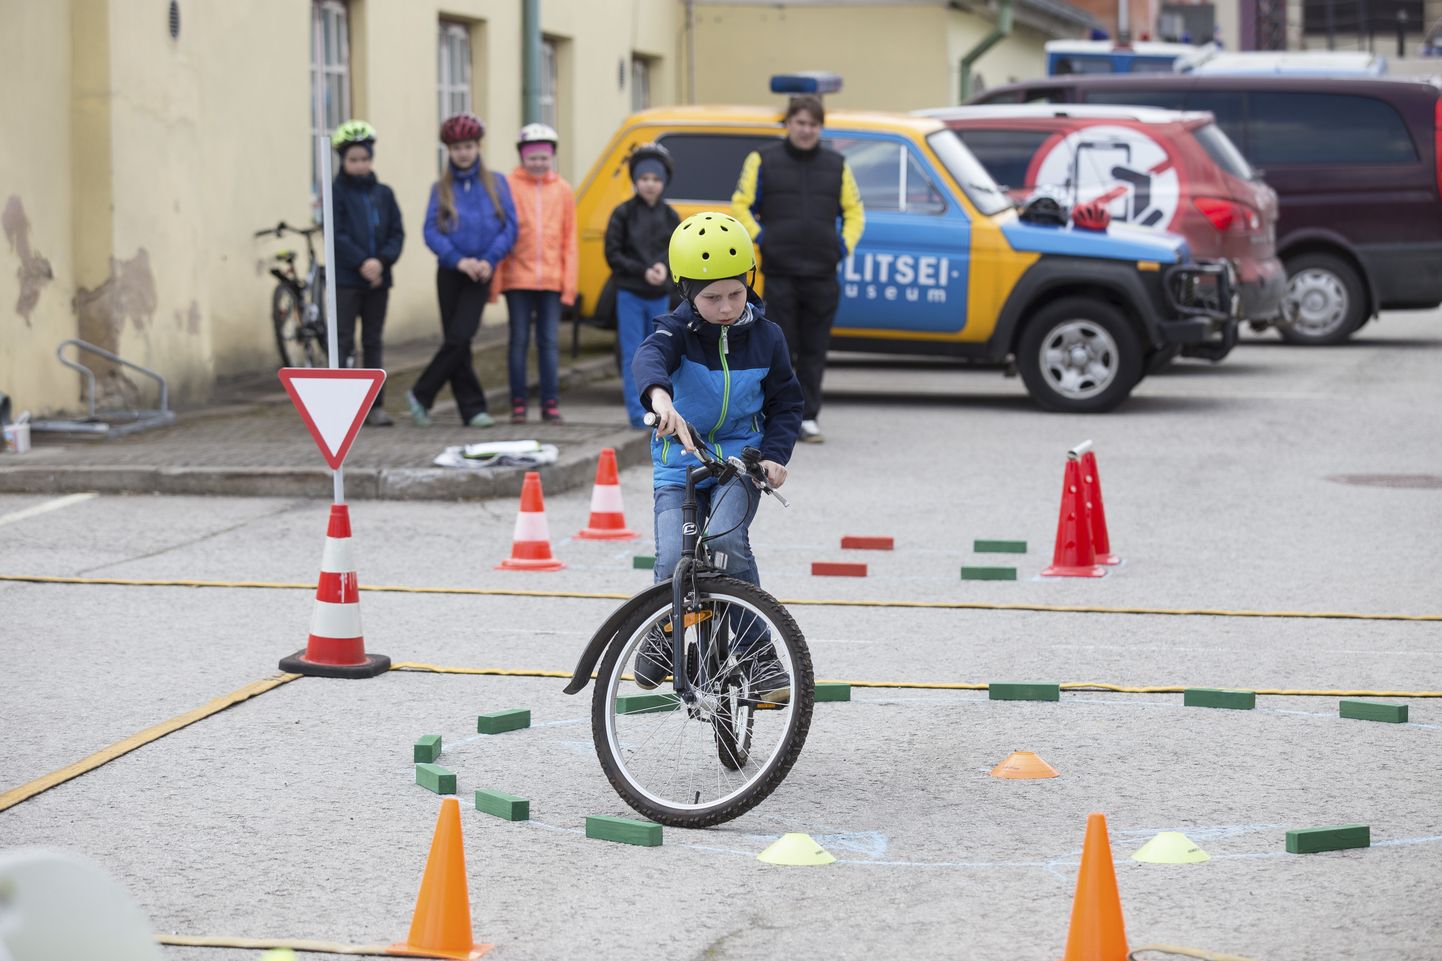 Eile korraldas maanteeamet Rakveres politseimuuseumi hoovis maakonna 3. ja 4. klasside õpilastele jalgrattavõistluse Vigurvänt.